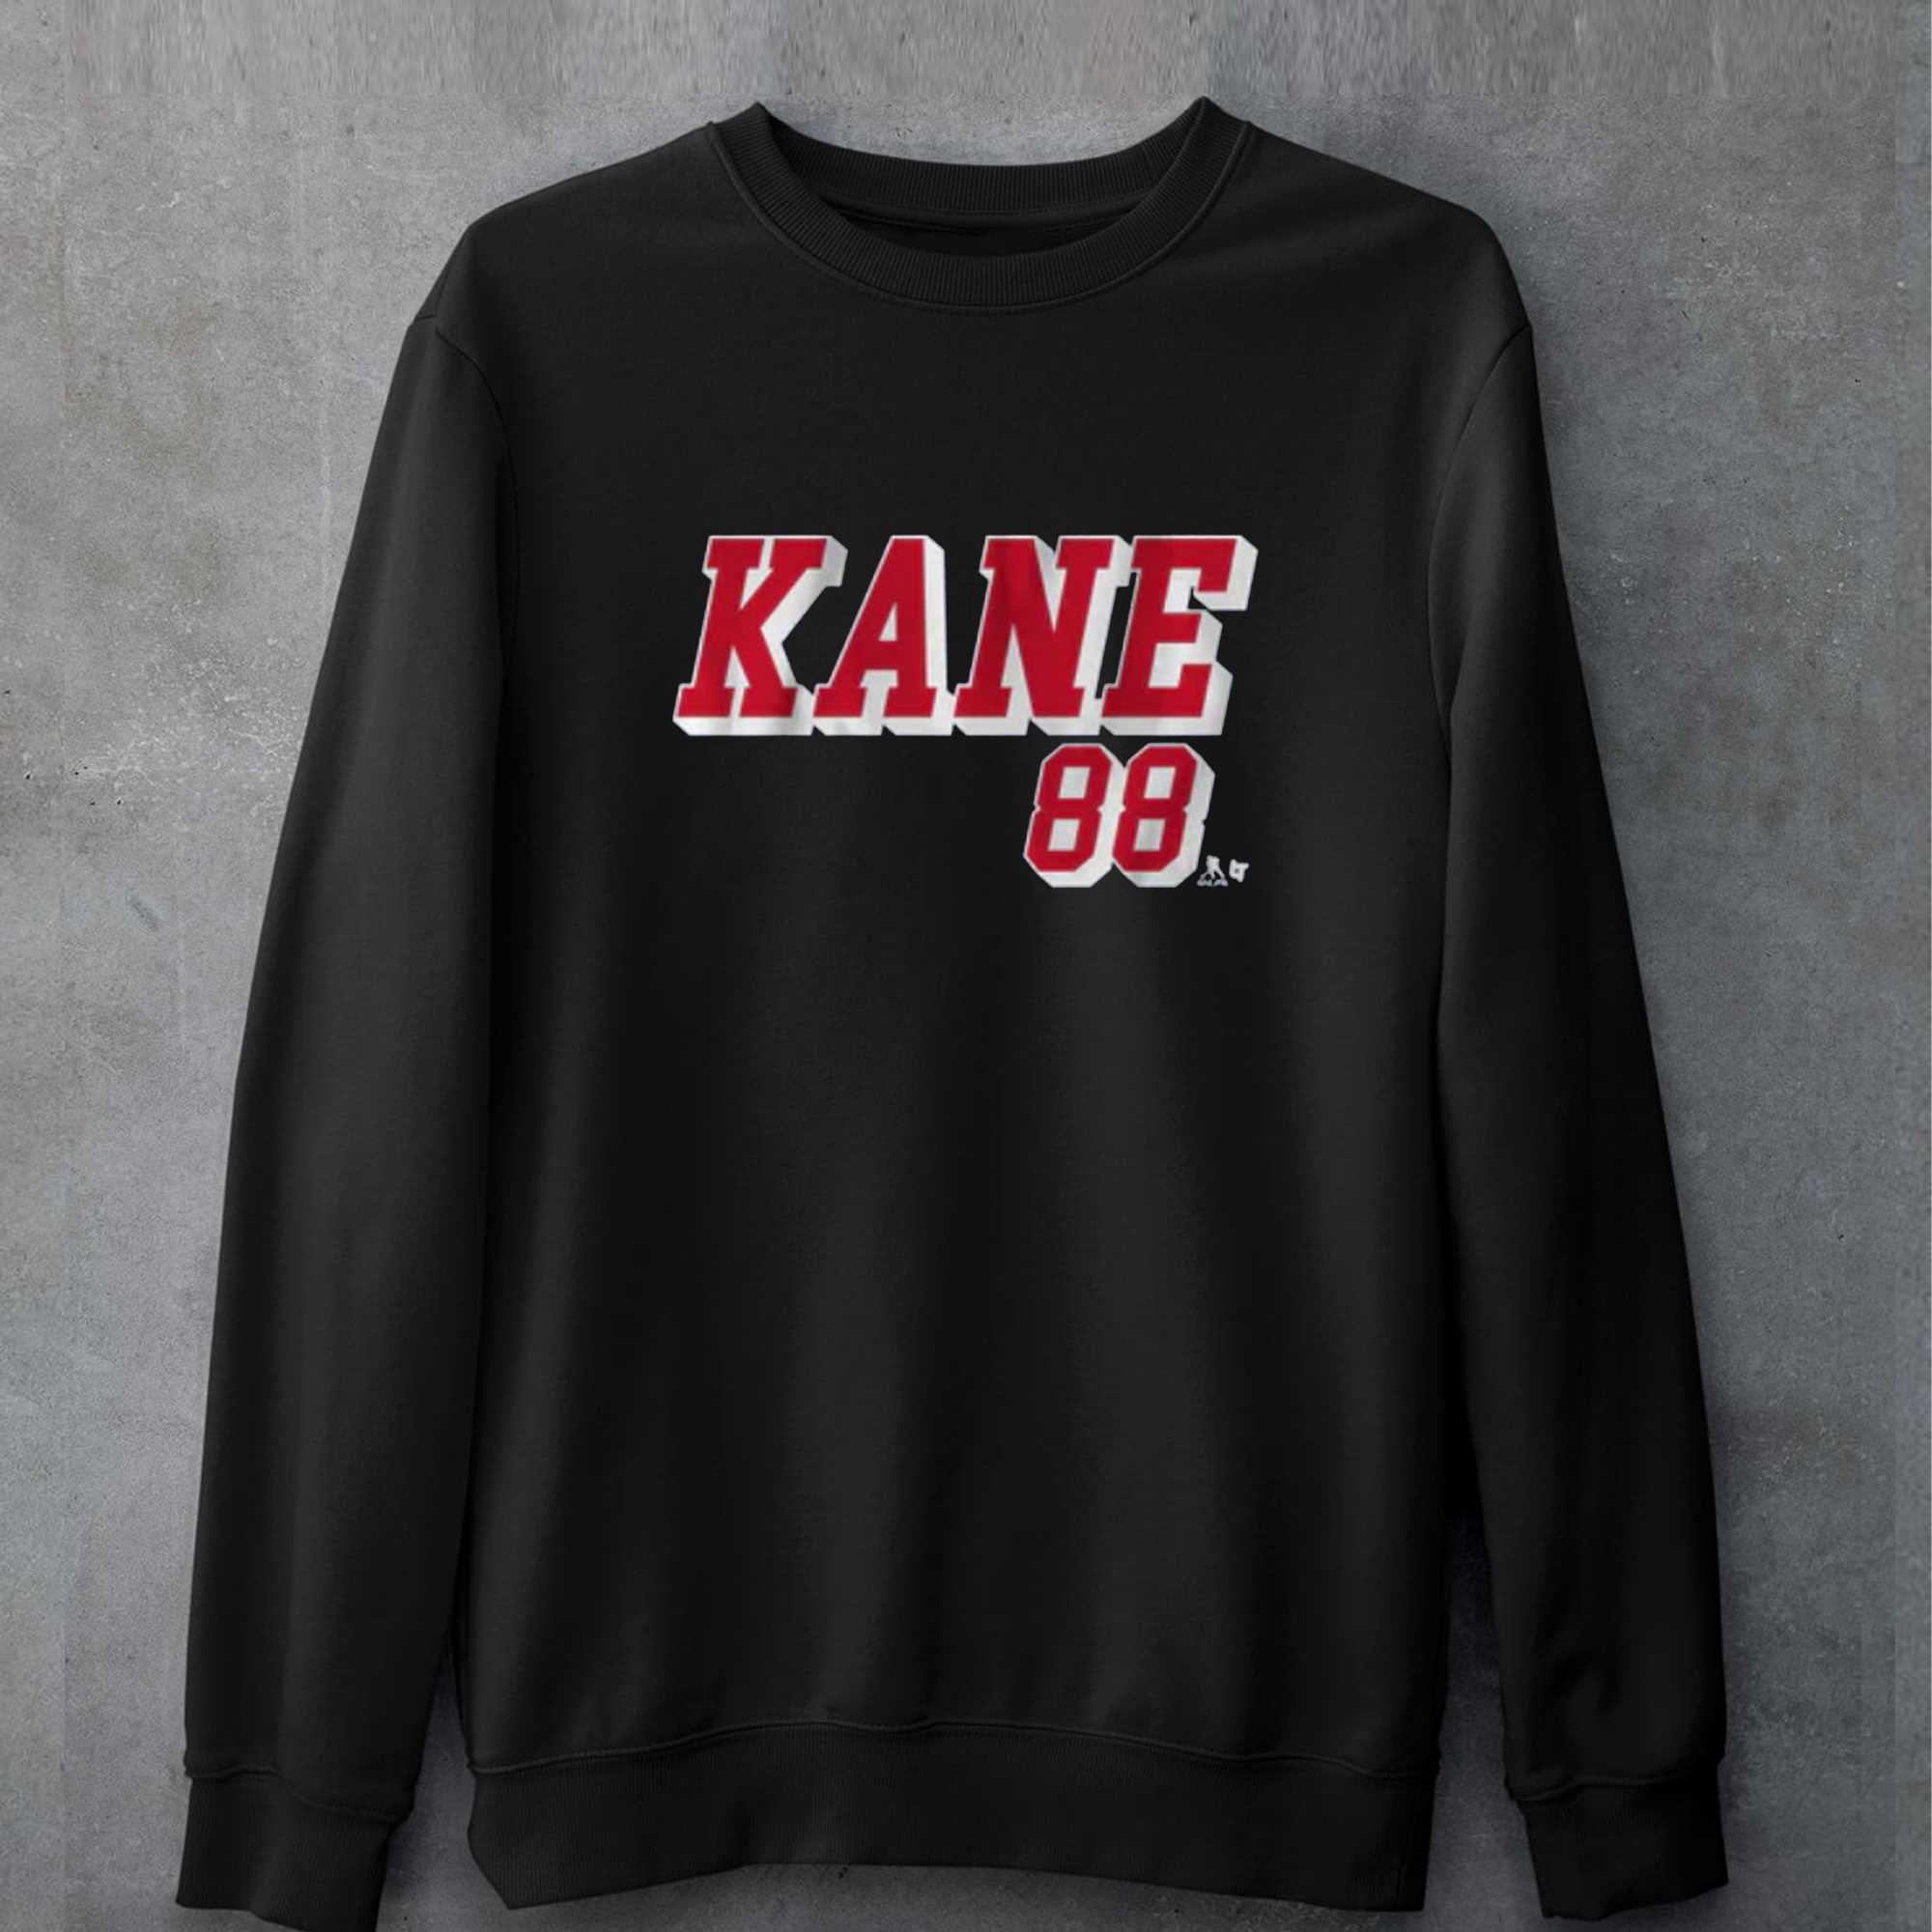 Patrick Kane New York 88 T-shirt 